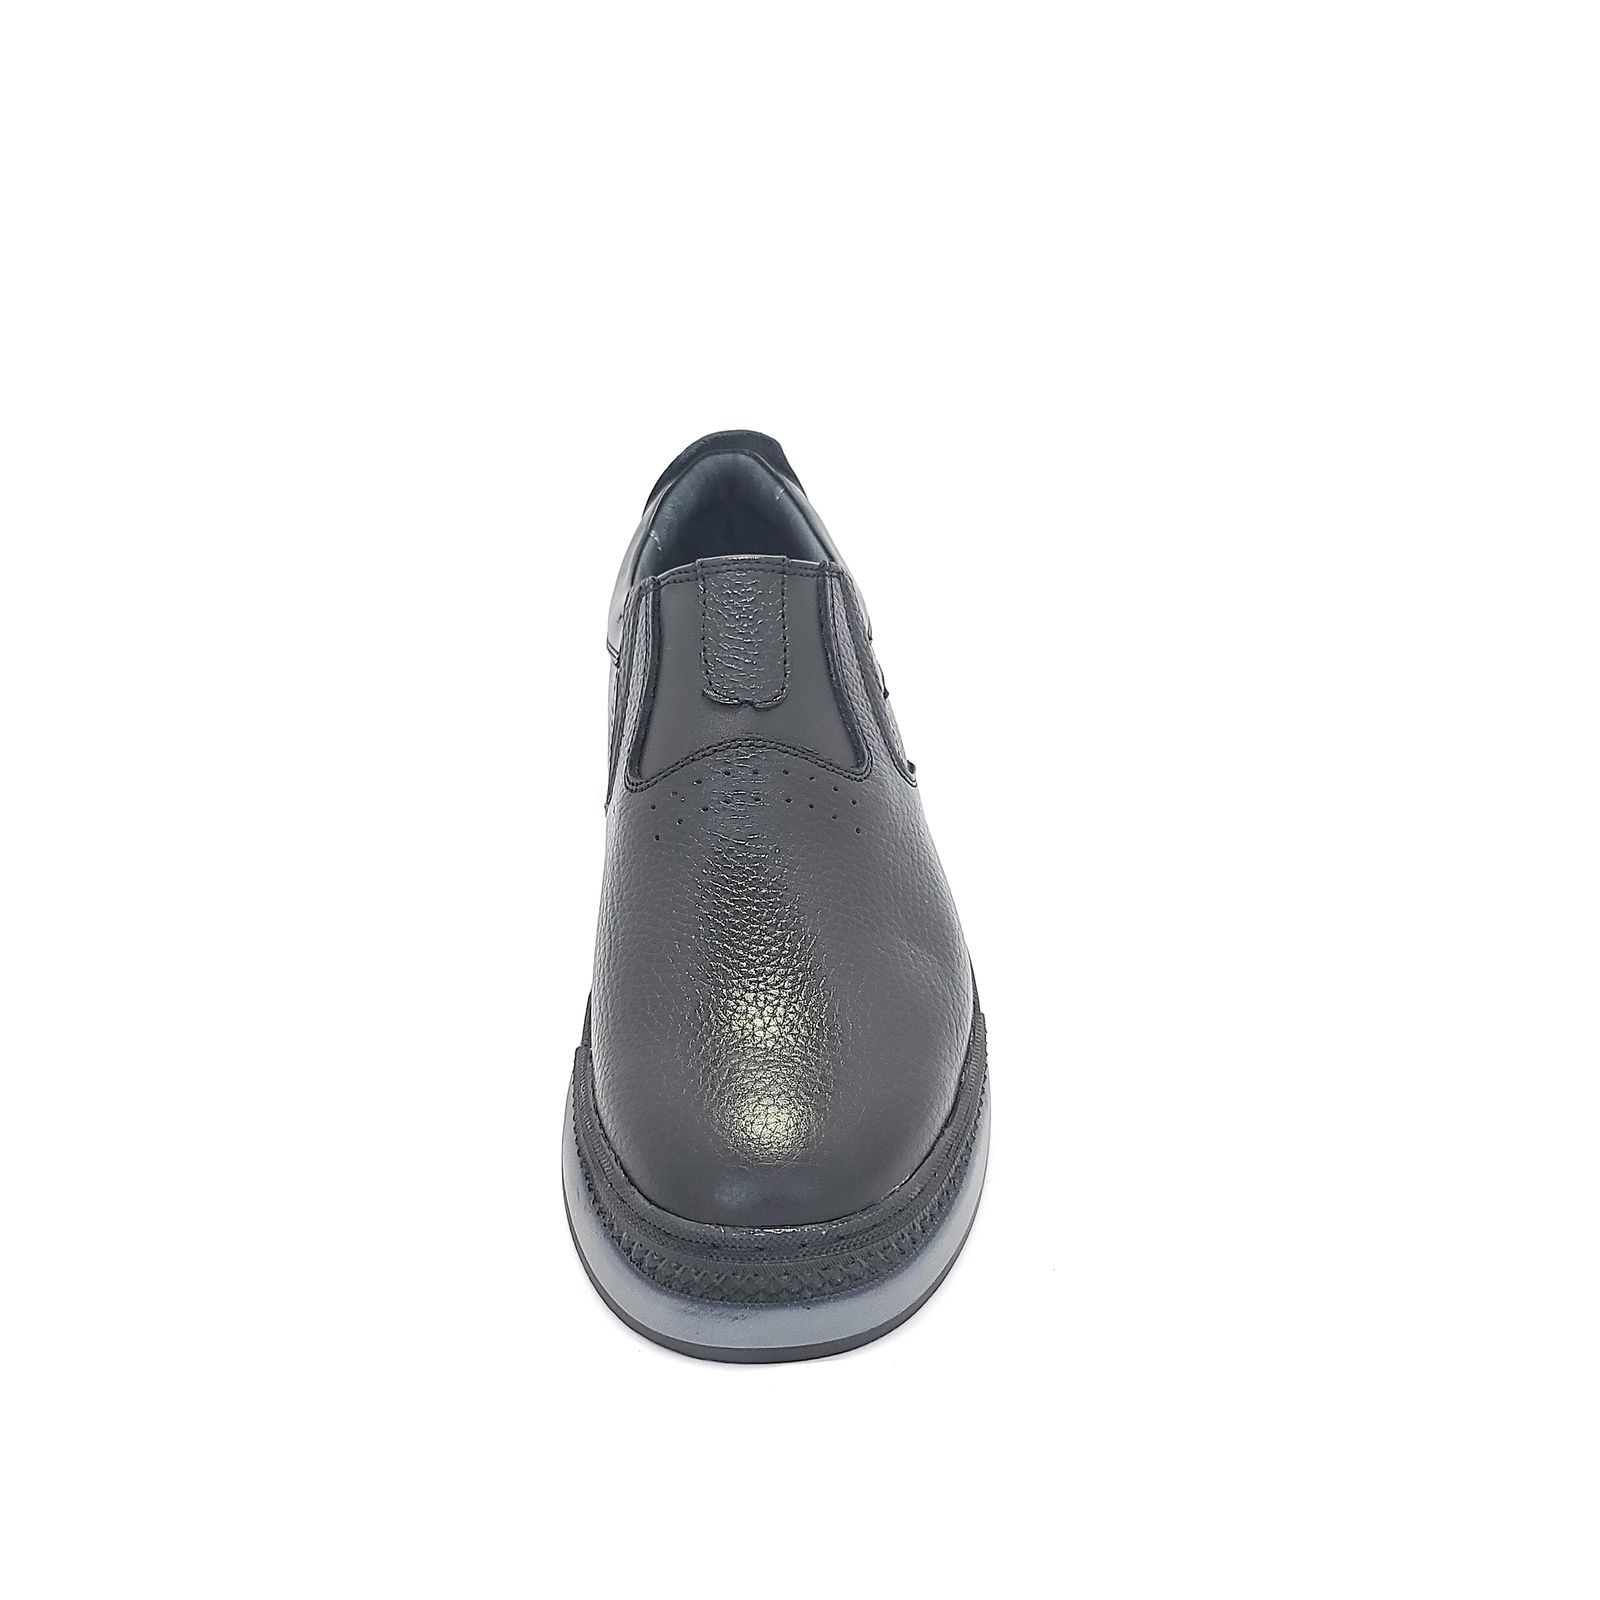  کفش روزمره مردانه دراتی مدل DL-0011 -  - 5